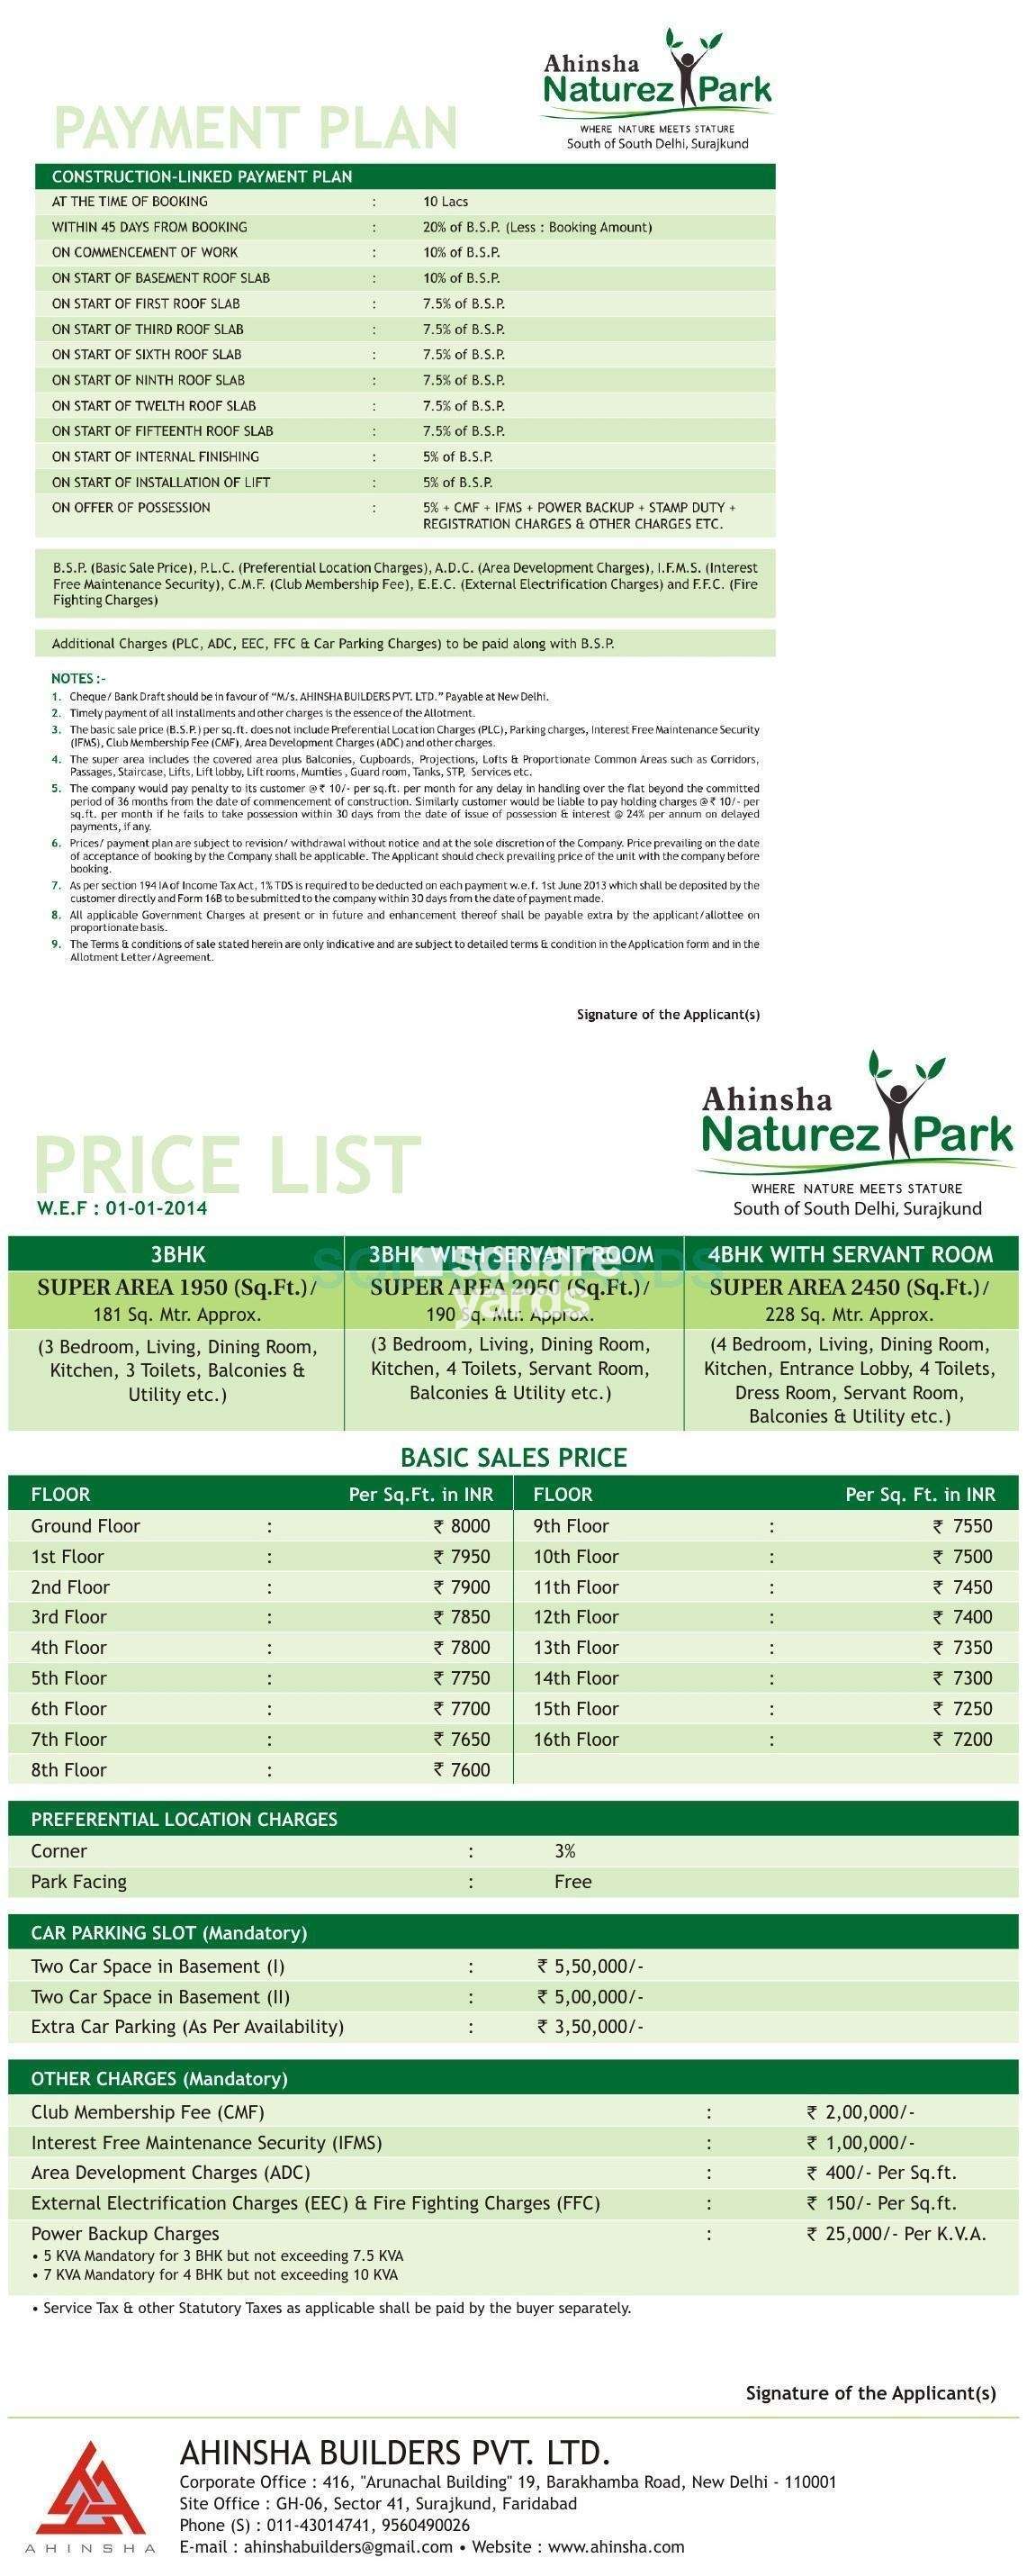 ahinsha natures park payment plan image1